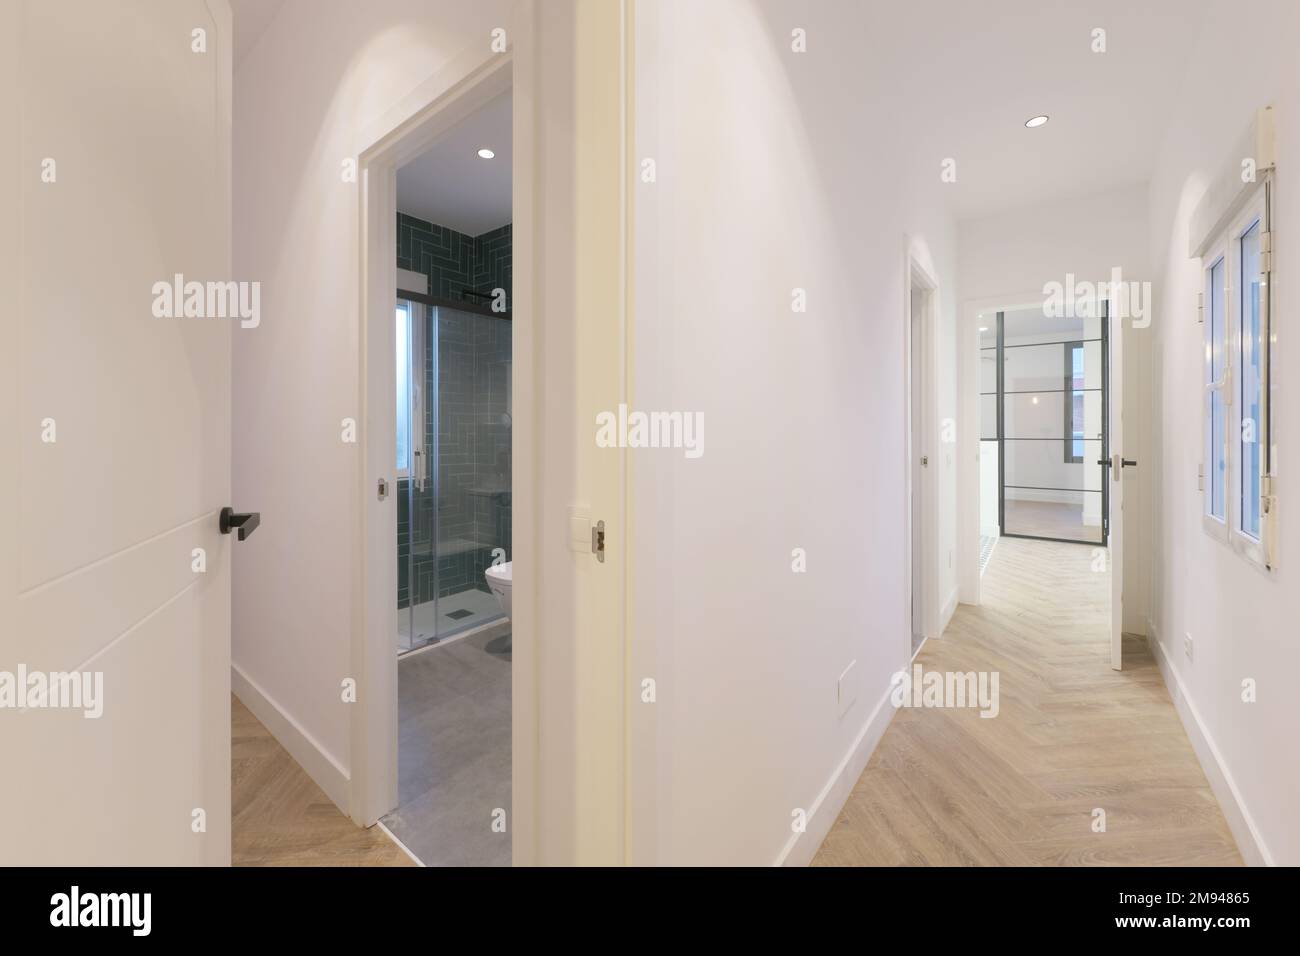 Corridoi di una casa con accesso a diverse camere con pavimenti in gres di legno Foto Stock